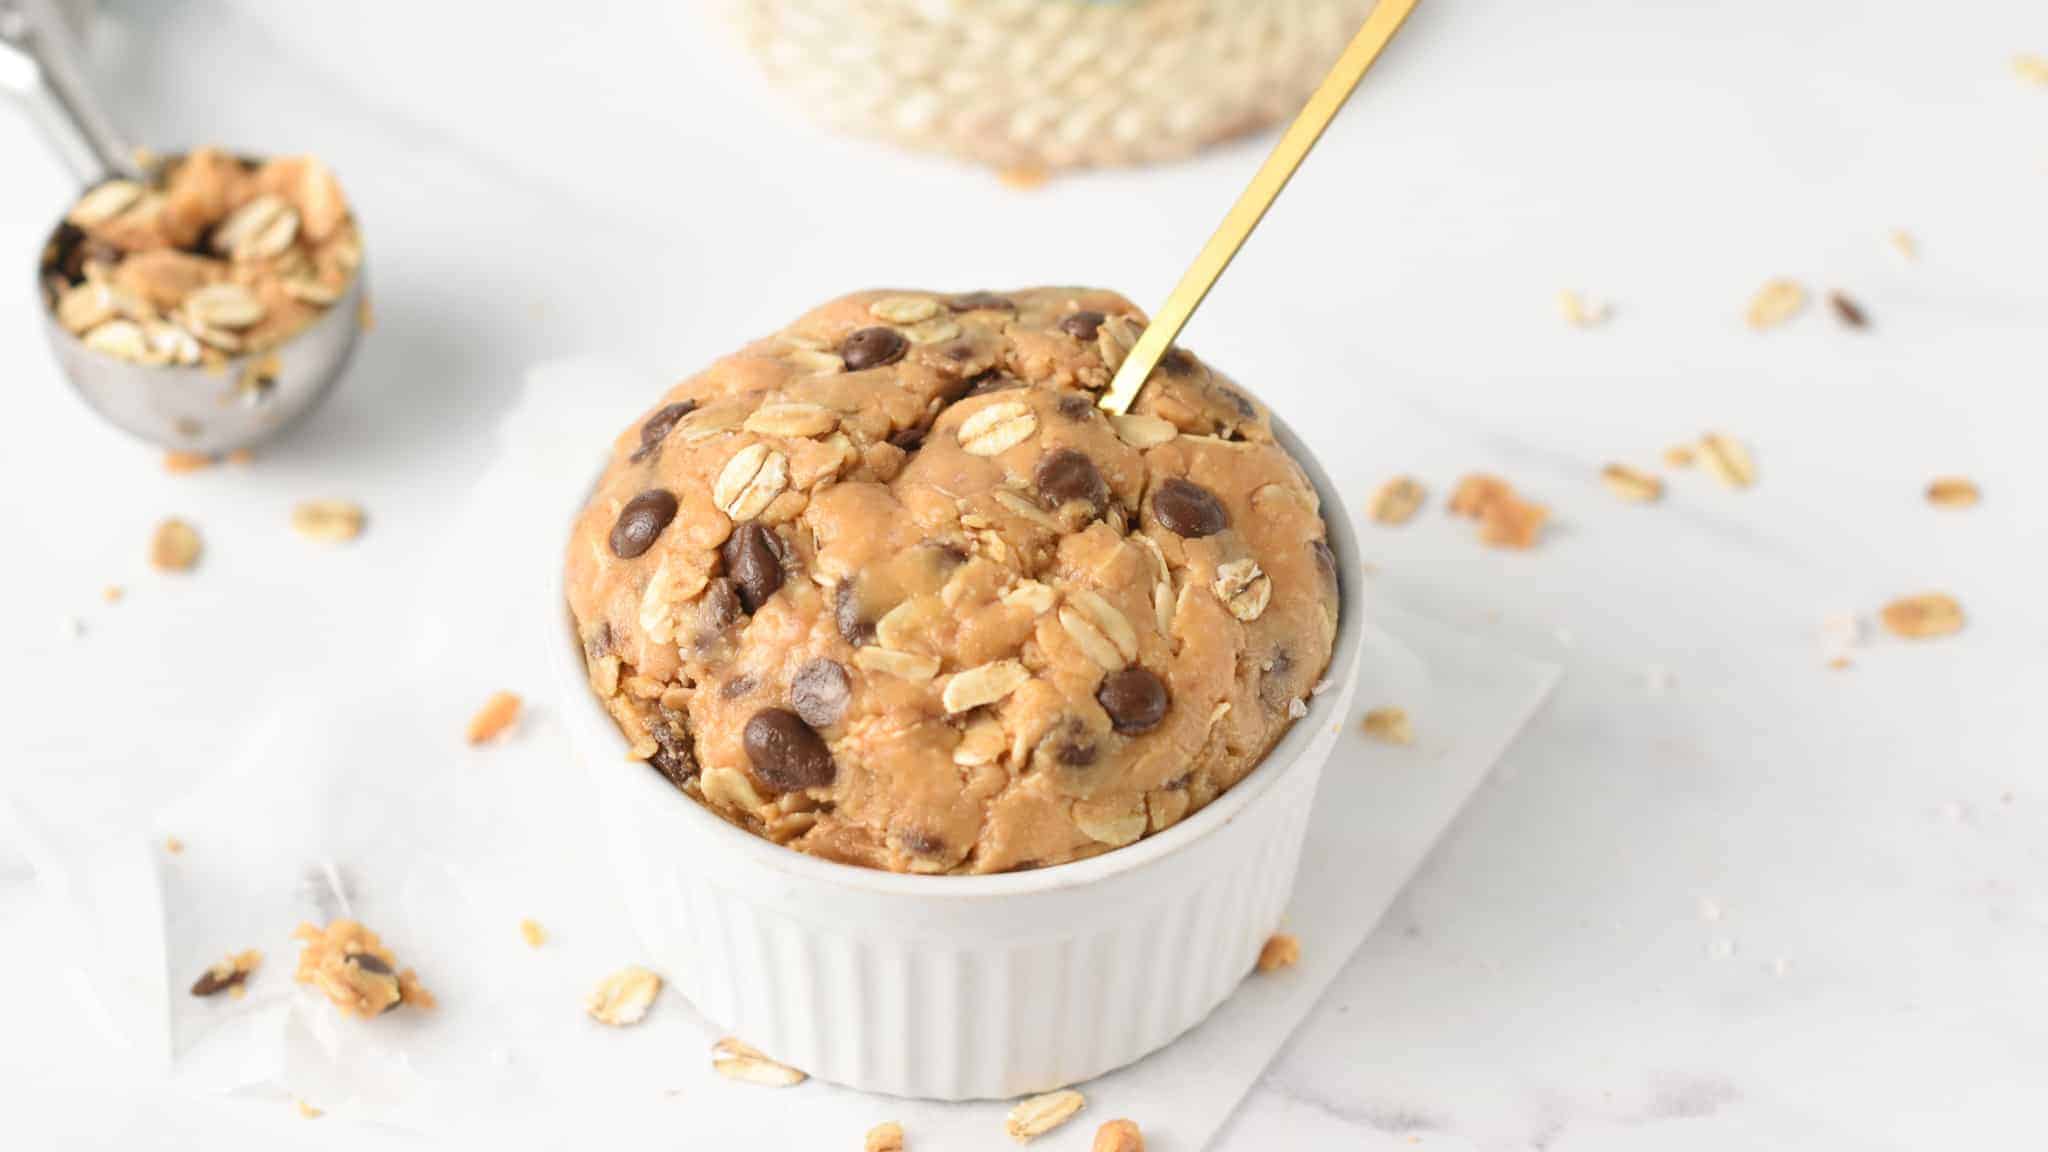 Edible Oatmeal Cookie Dough Healthy 5 ingredients Vegan